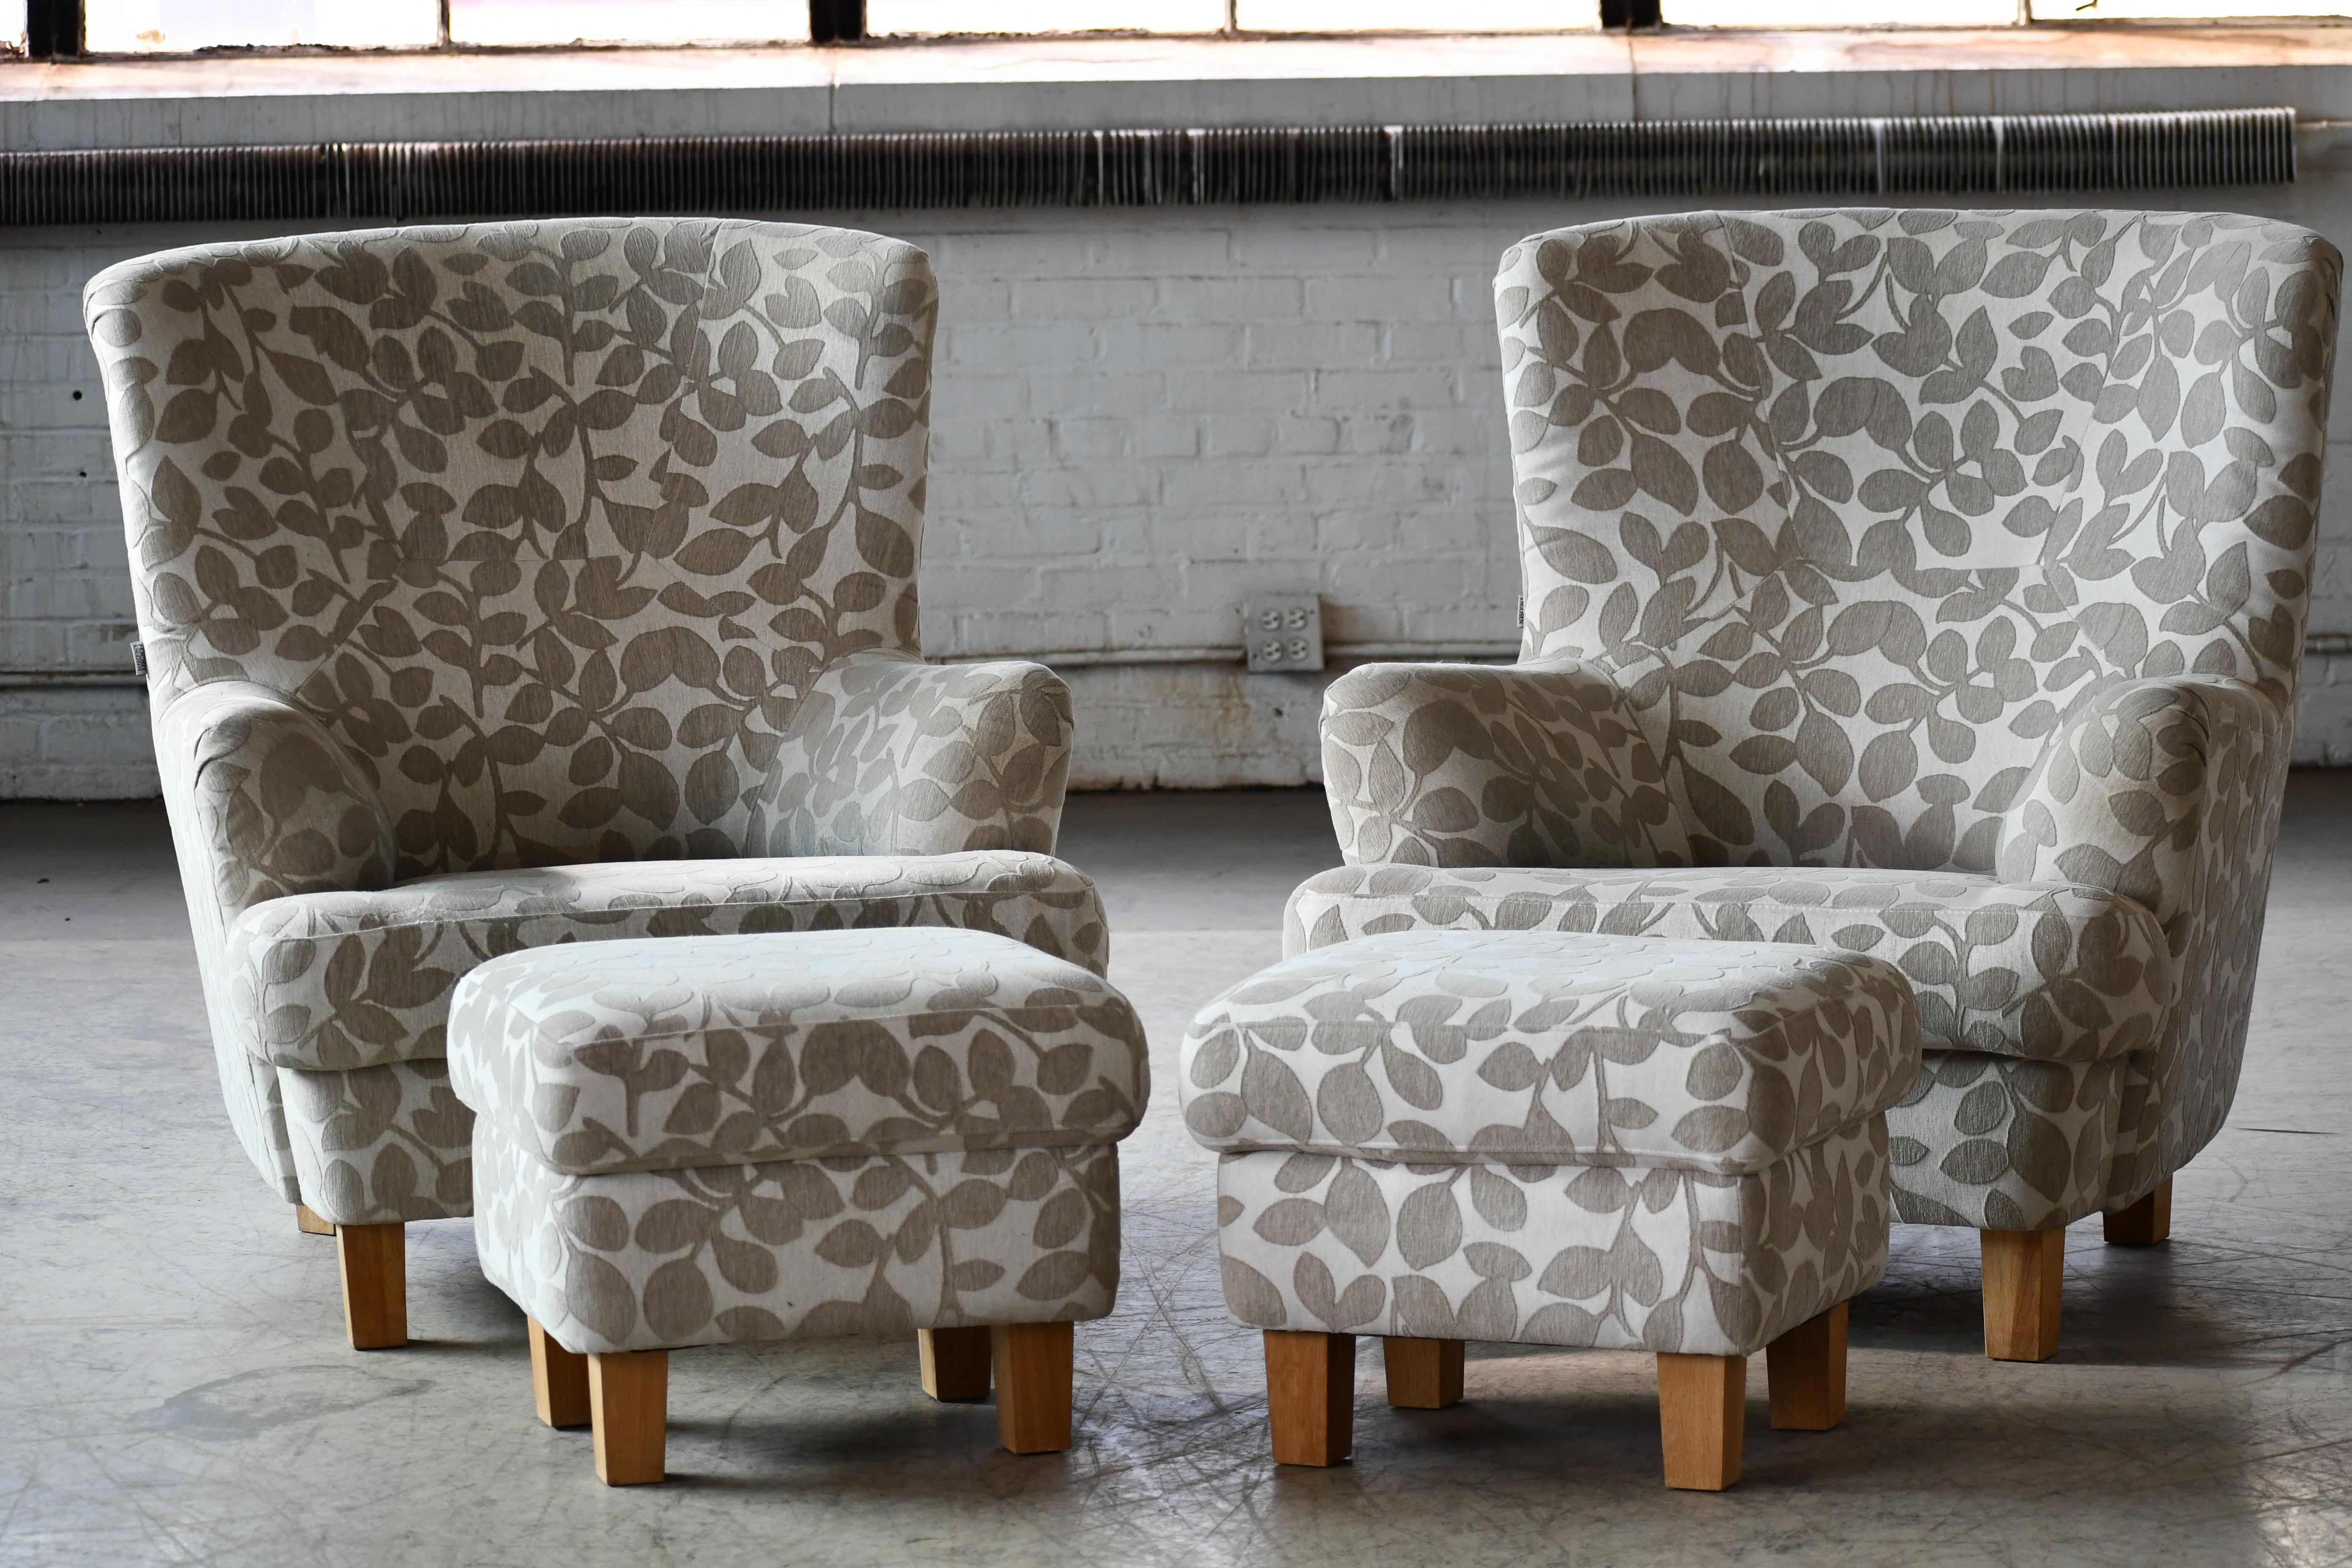 Paire de superbes fauteuils club ou lounge danois de fabrication récente dans le style des chaises des années 1940 mais vraisemblablement fabriqués vers 2000. Nous avons trouvé ces chaises au Danemark et, d'après leur apparence, elles semblaient